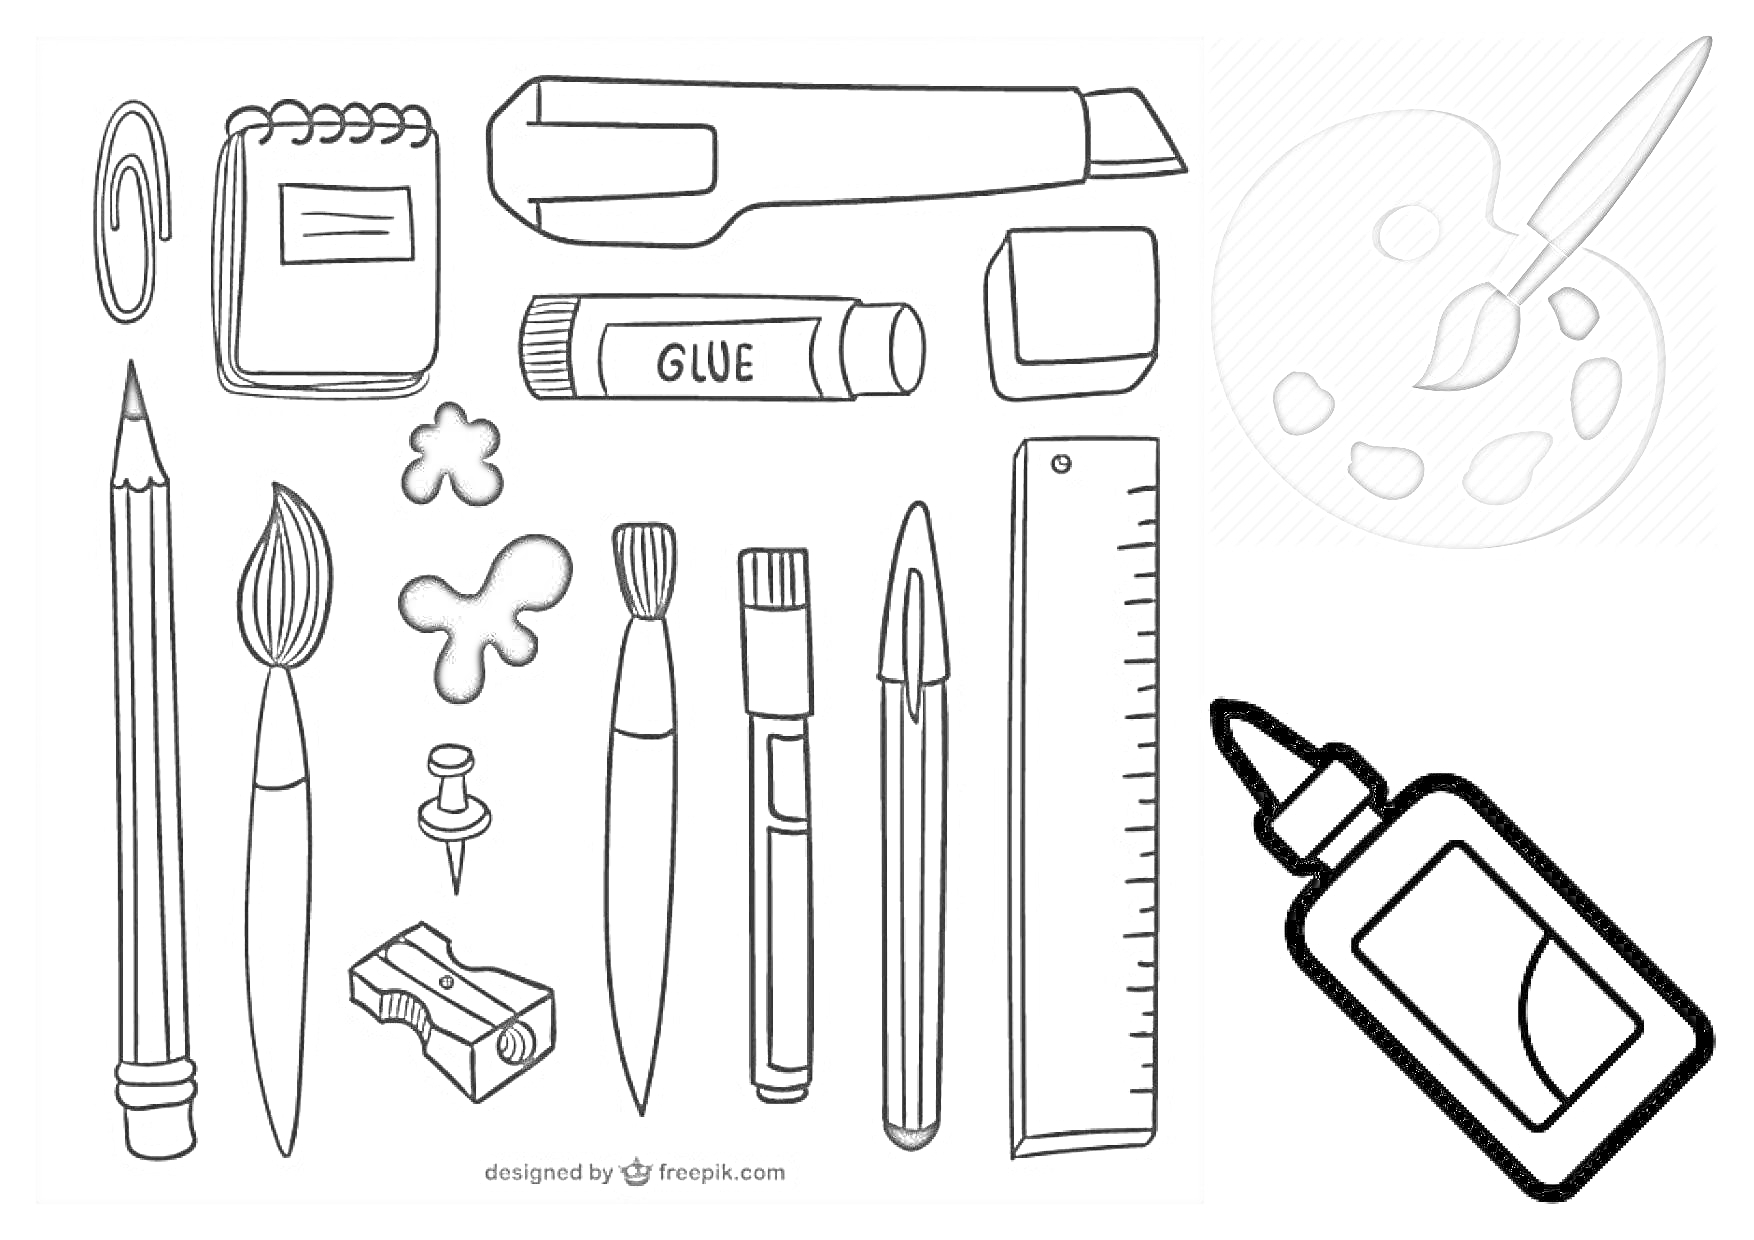 Раскраска Канцелярия для девочек - блокнот, скрепка, карандаш, кисть, зажим для бумаги, скрепка-бабочка, кнопка, ластик, маркер, клей, линейка, кисть и палитра, клей в тюбике, точилка